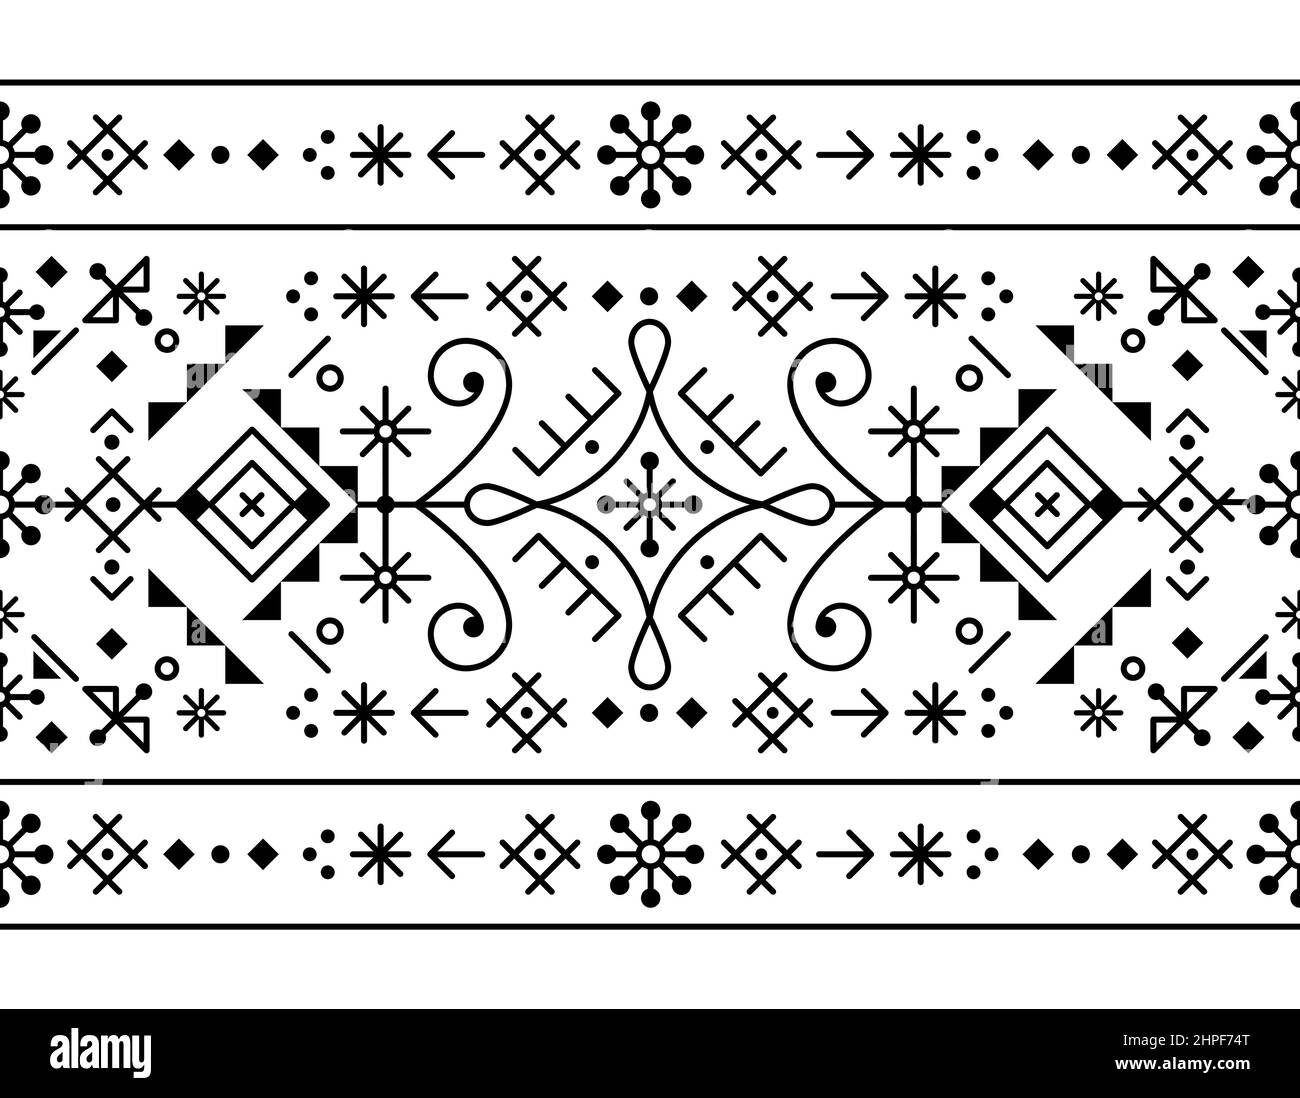 Isländisch Stil Tribal Linie Art Vektor nahtlose patten mit Herzen, Monde und geometrischen Formen, Textil- oder Stoffdruck Design von Viking Rune inspiriert Stock Vektor